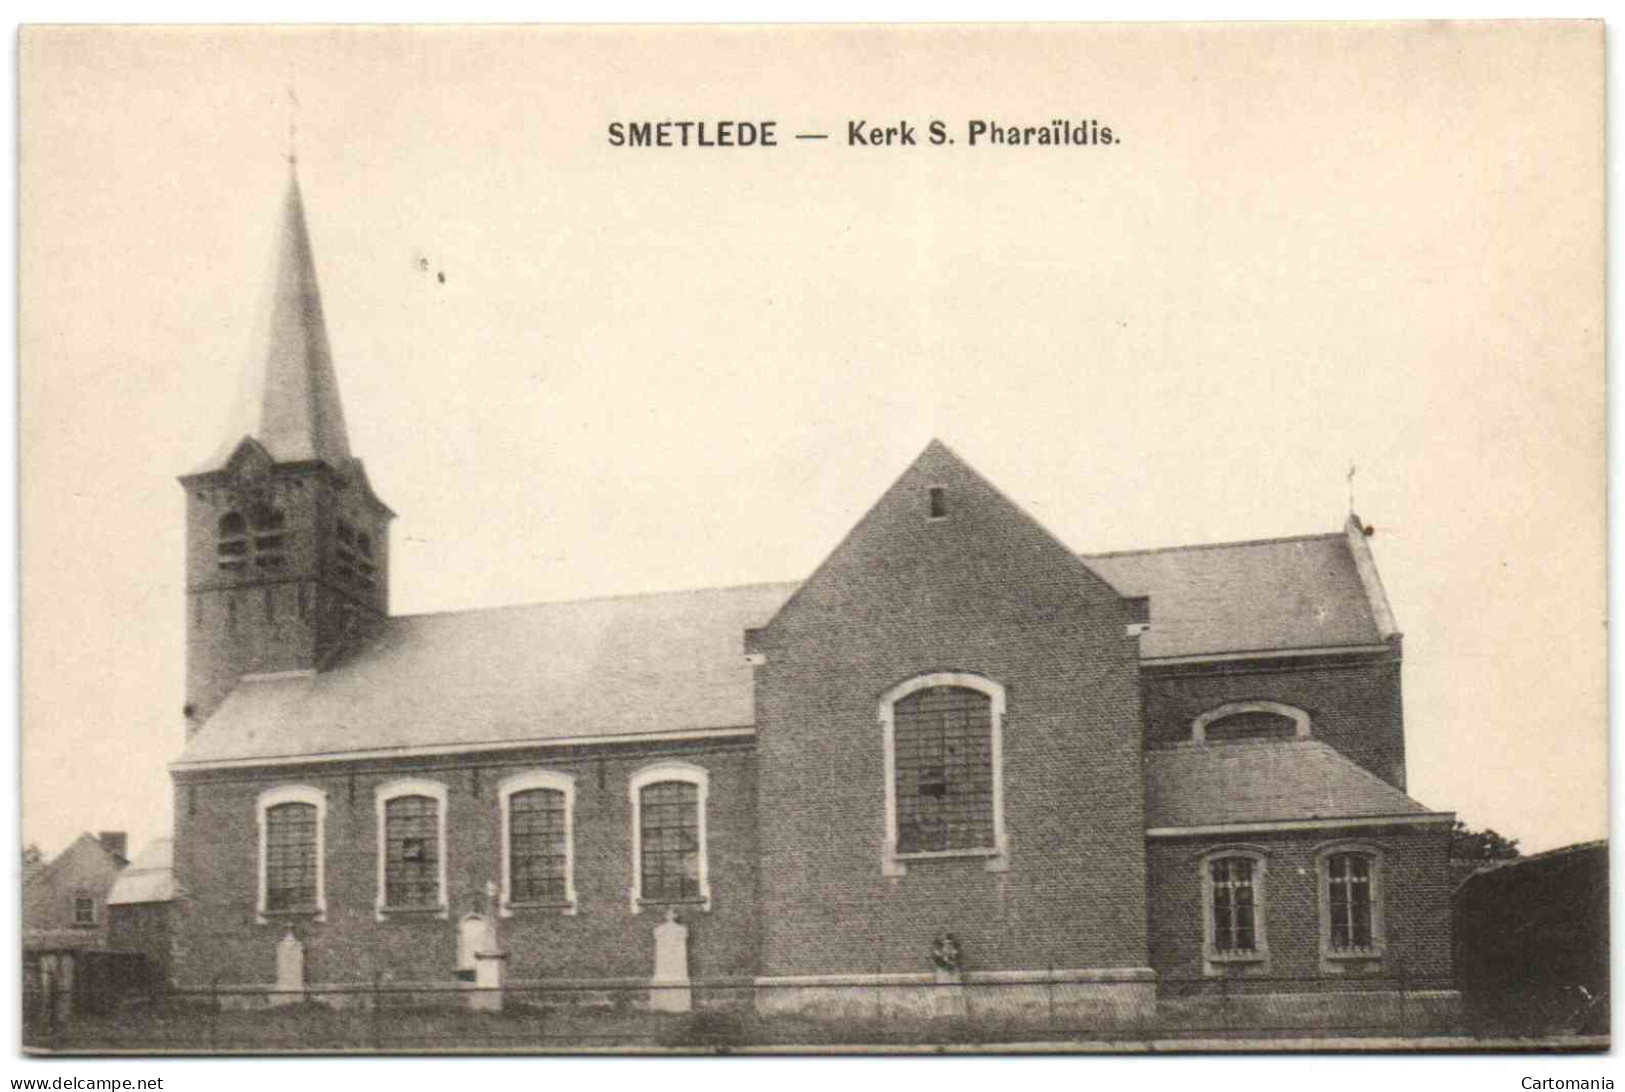 Smetlede - Kerk S. Pharaïldis - Lede